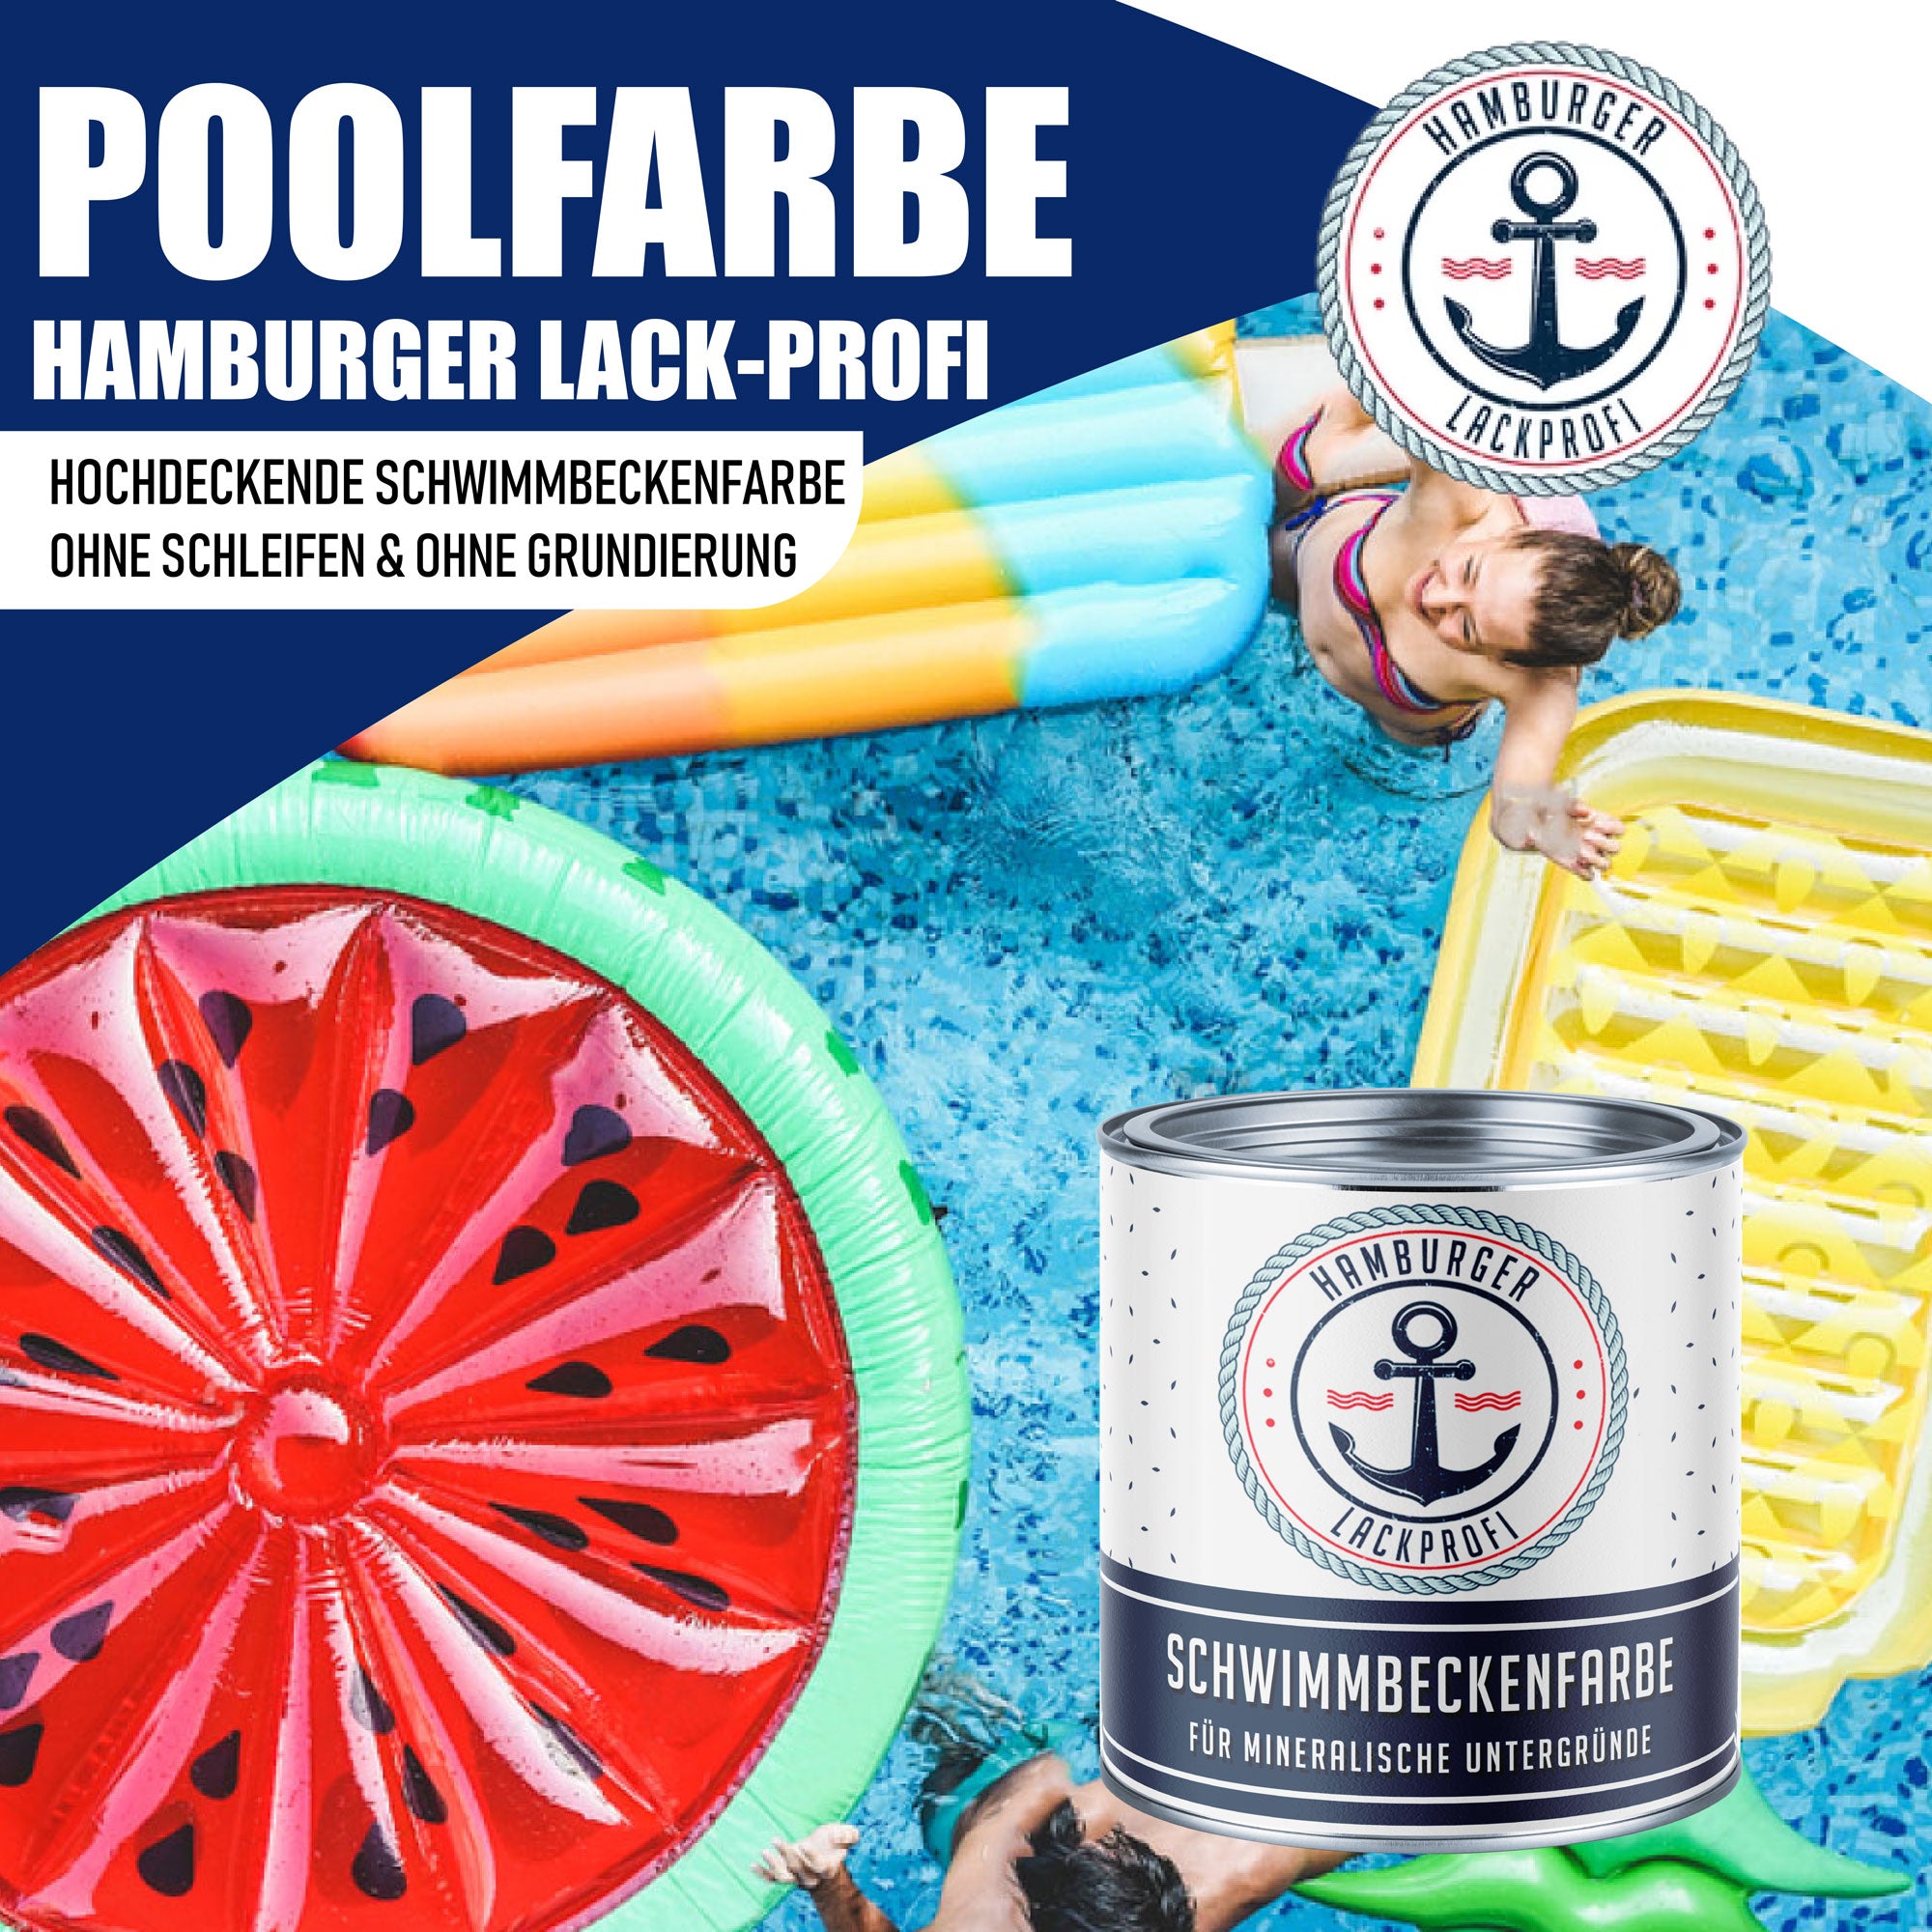 Hamburger Lack-Profi Schwimmbeckenfarbe Papyrusweiß RAL 9018 - hochdeckende Poolfarbe